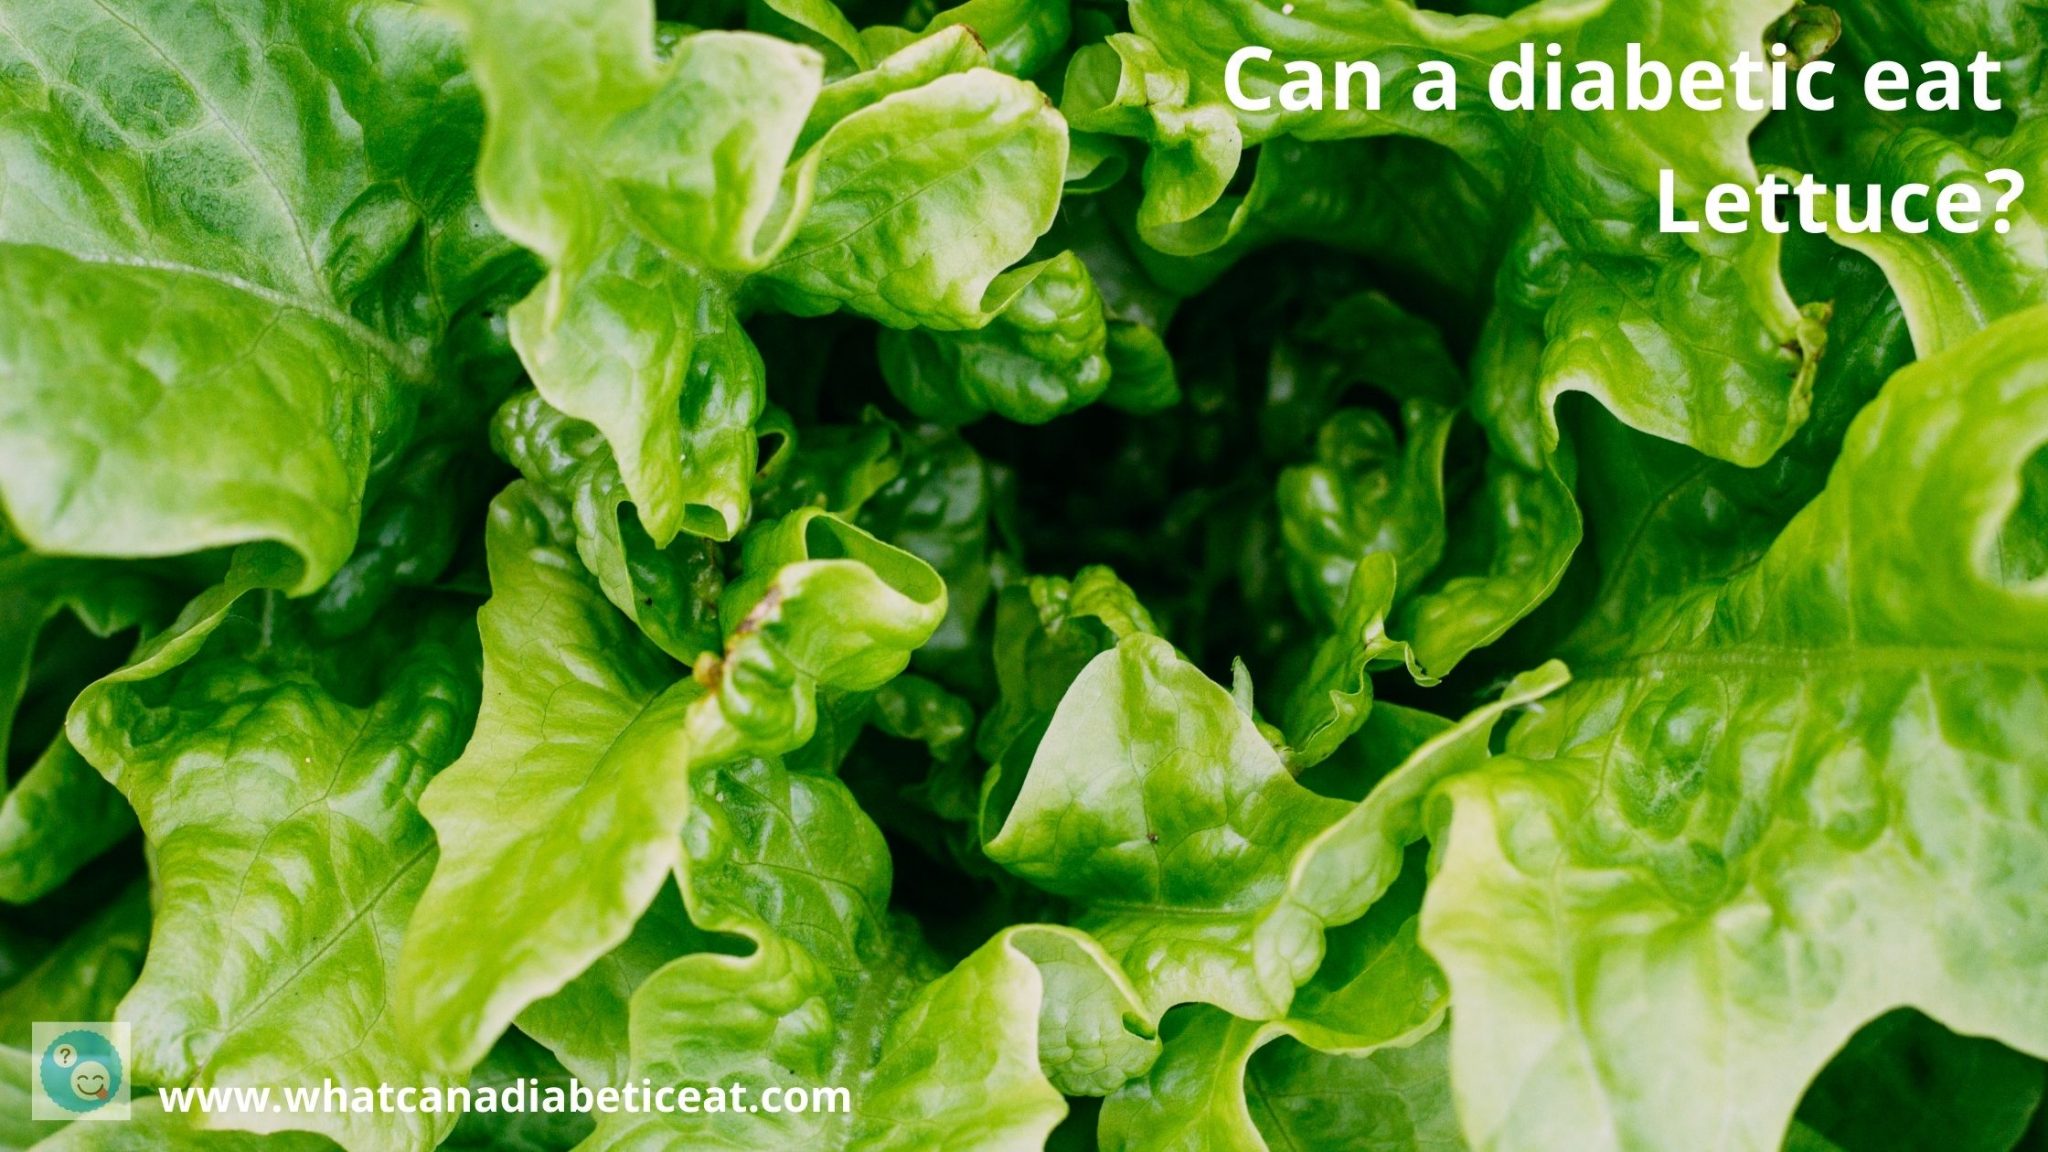 Can a diabetic eat lettuce? Does lettuce raise blood sugar levels?